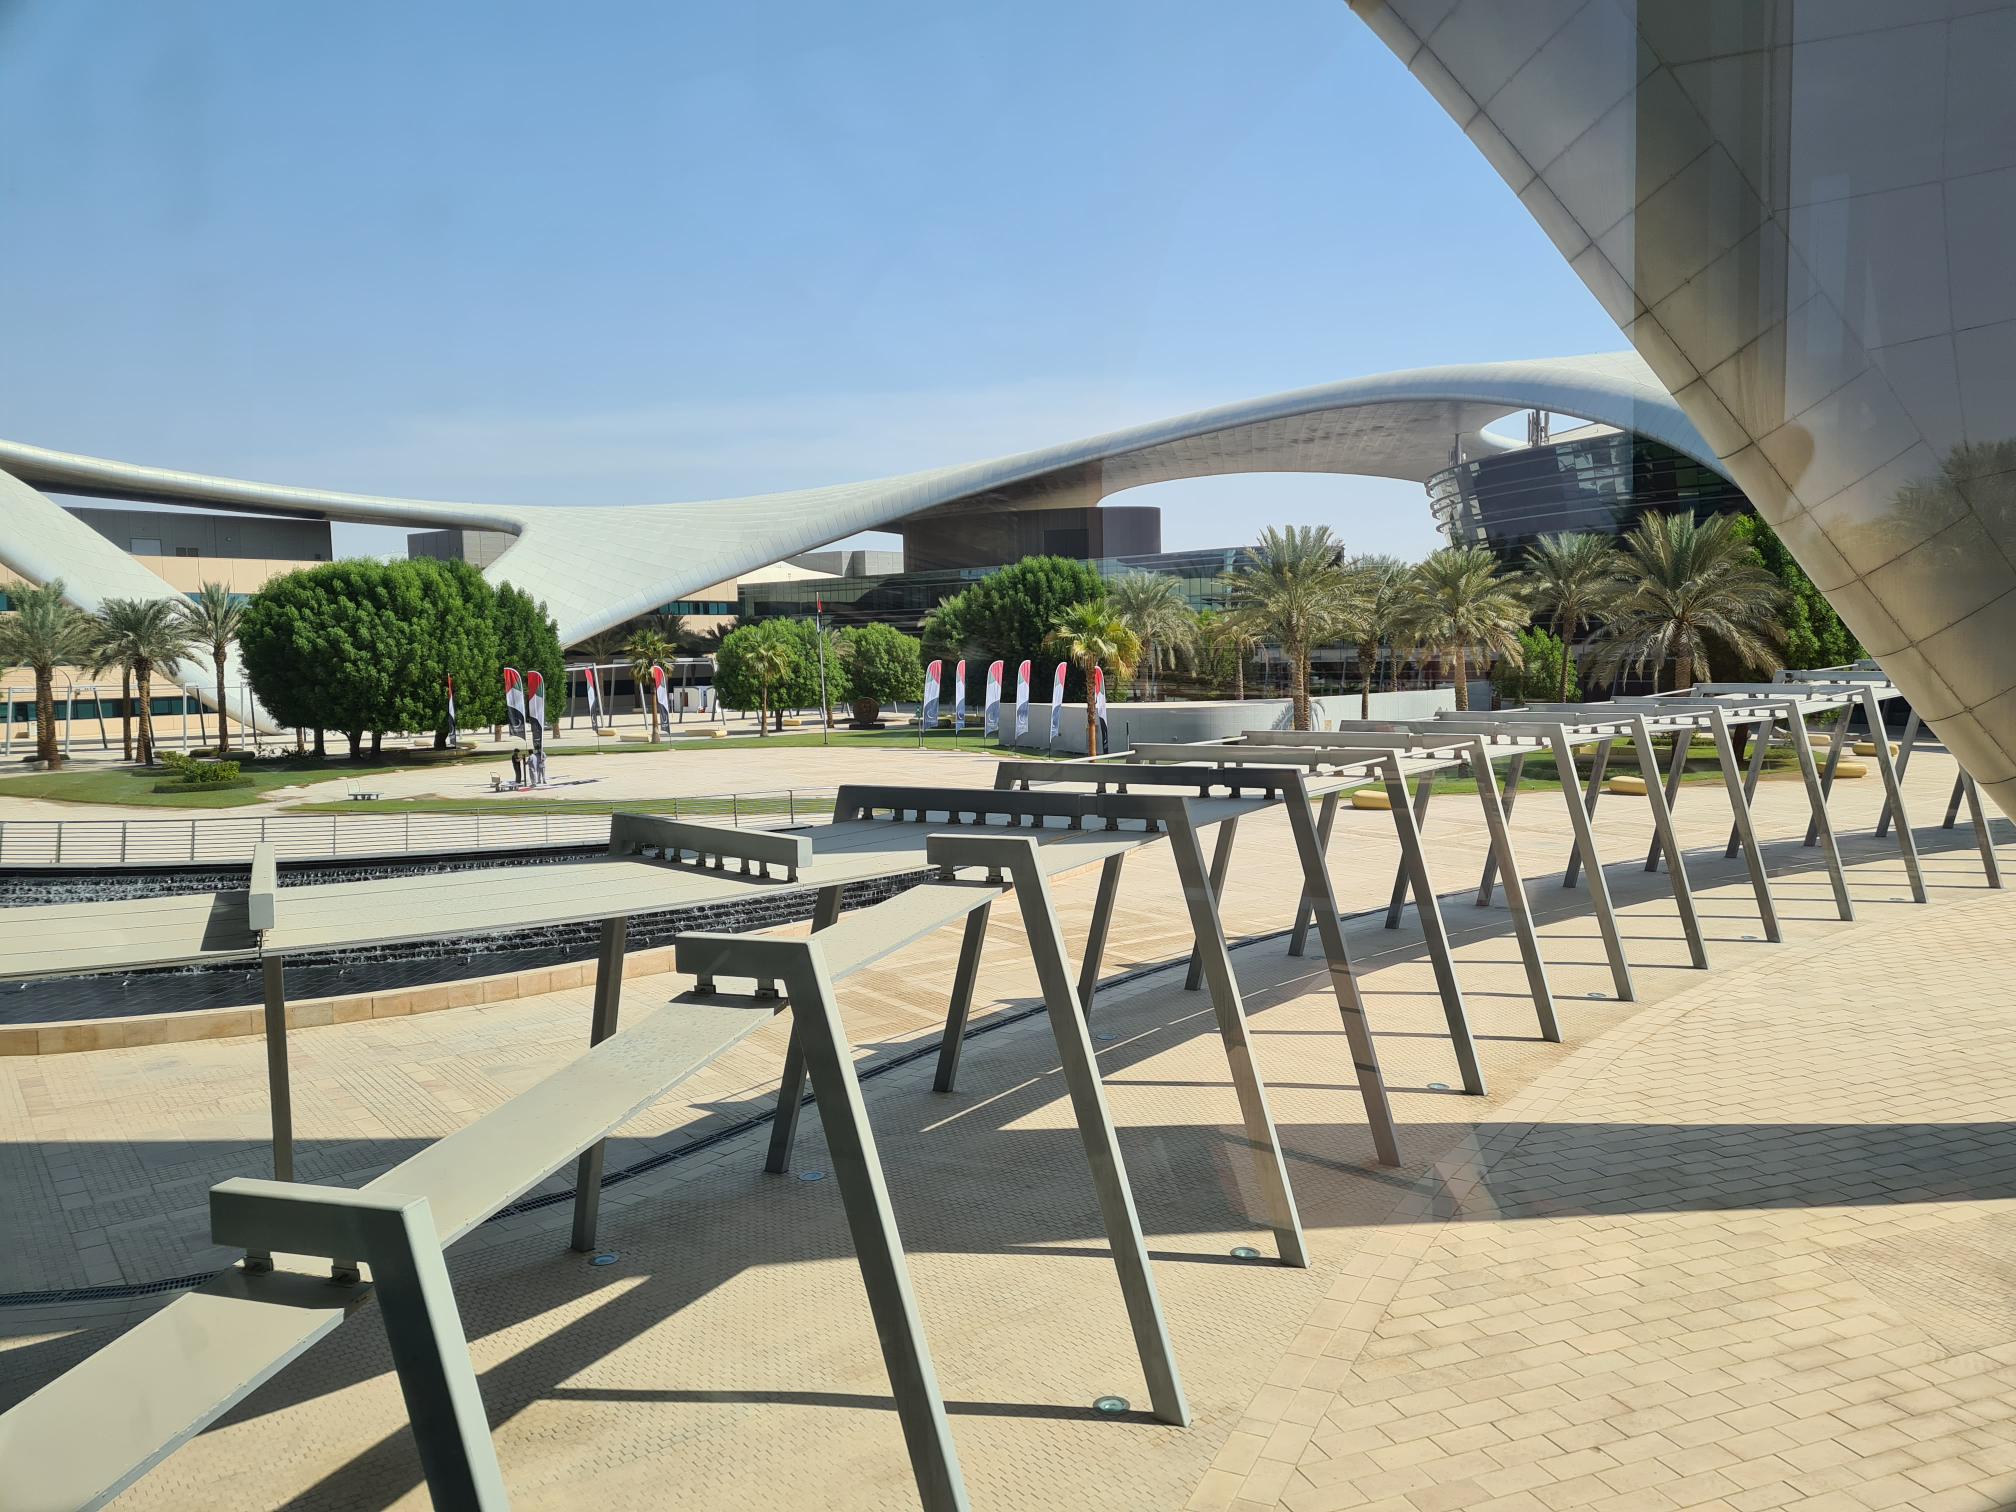 1. Zayed University, Abu Dhabi, Oct 2022